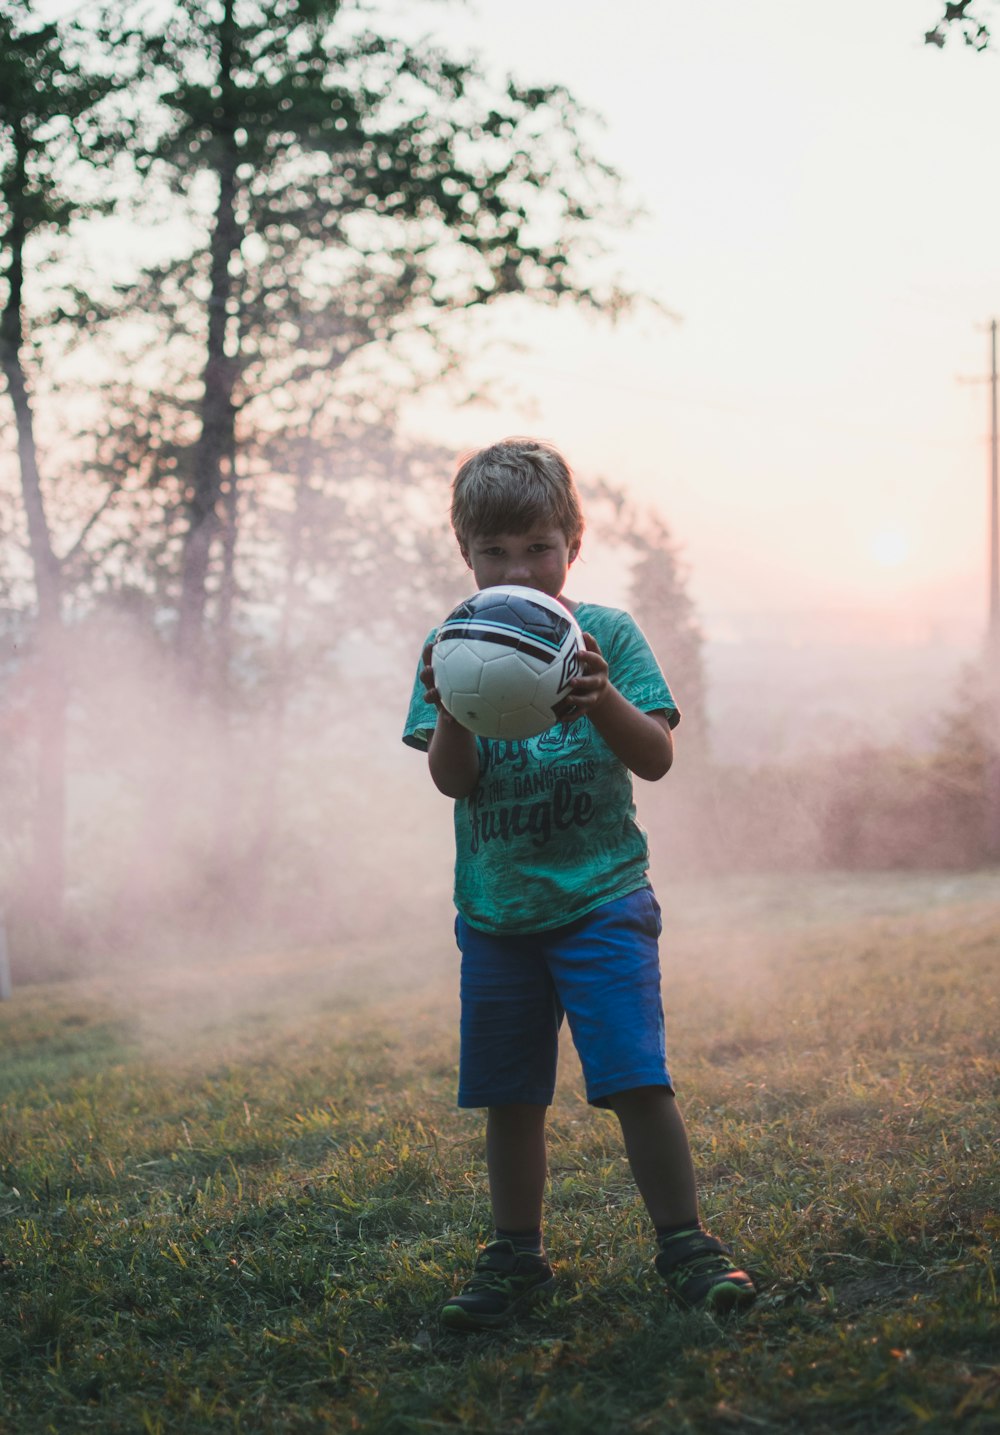 Fotografia de foco raso do menino segurando uma bola